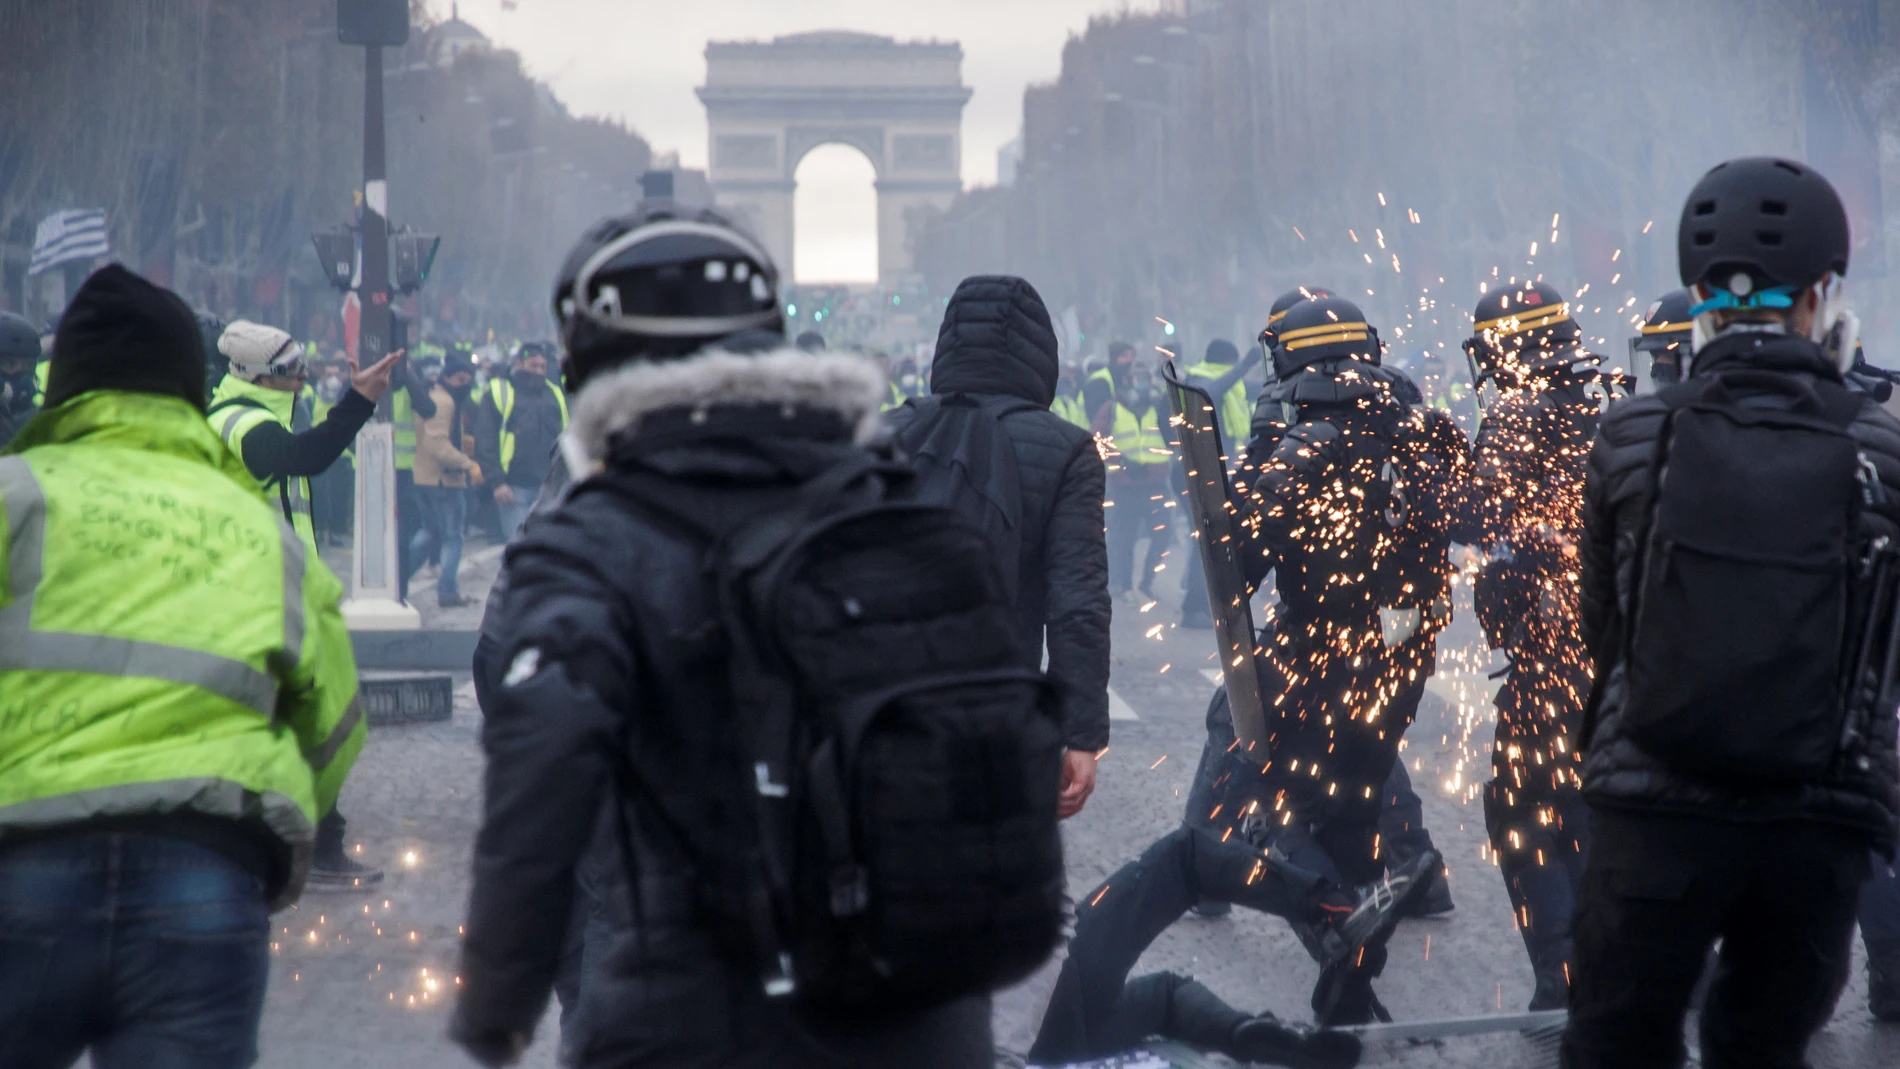 Las fuerzas del orden francesa lanzaron hoy en París gases lacrimógenos